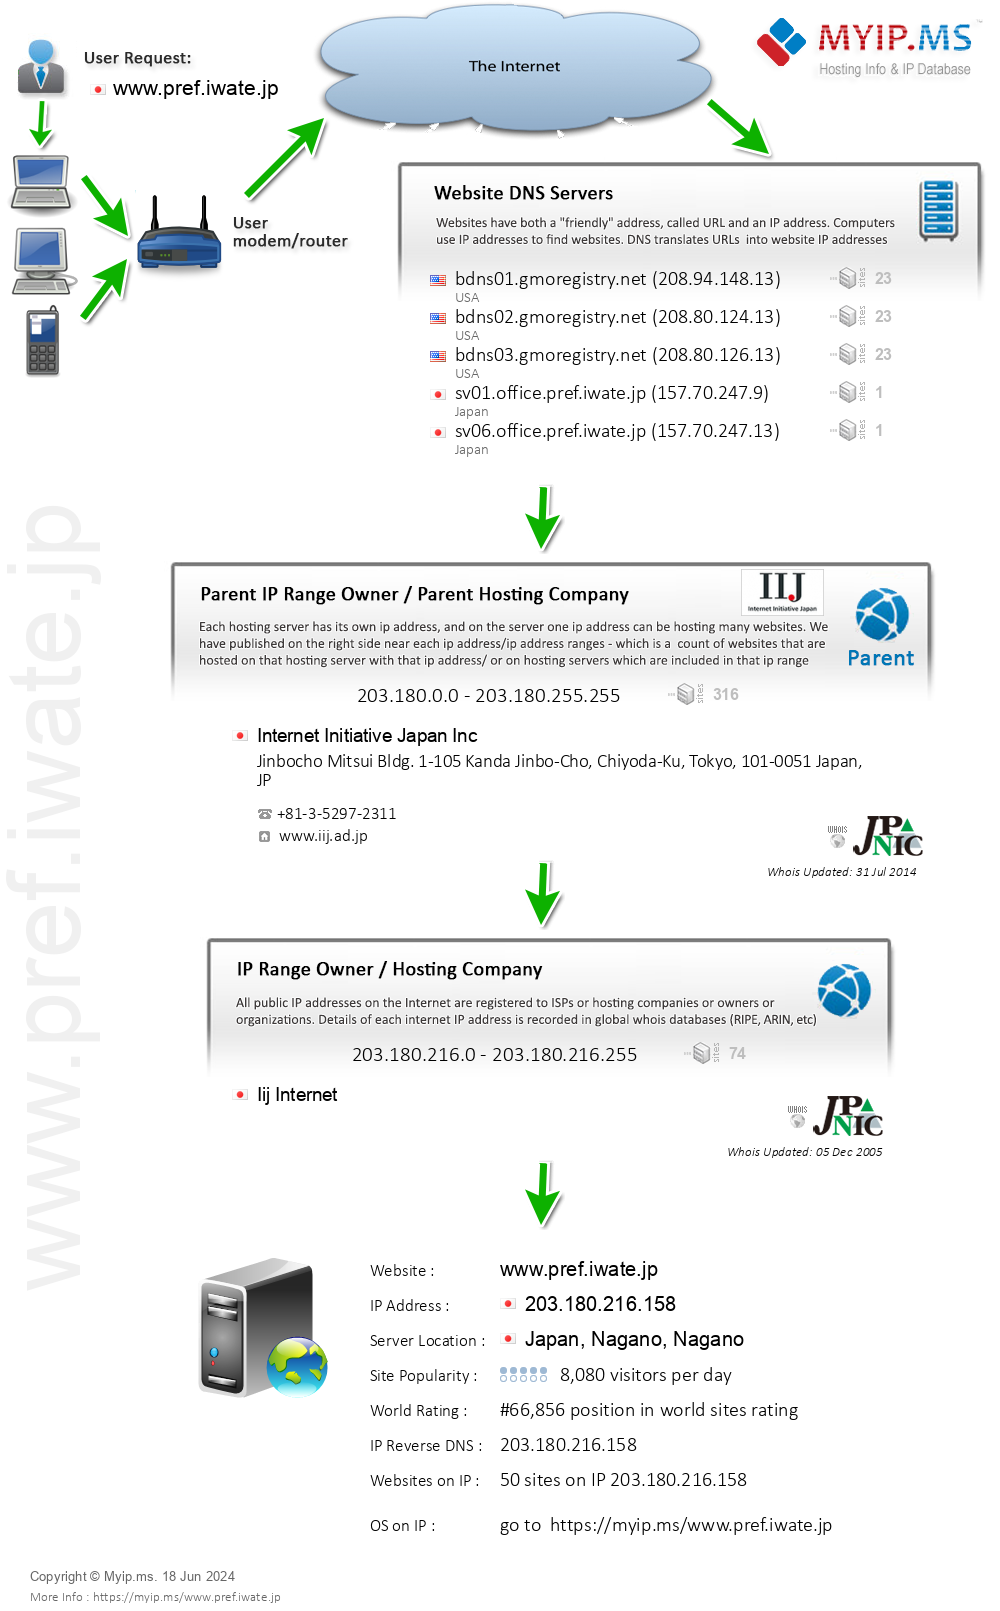 Pref.iwate.jp - Website Hosting Visual IP Diagram